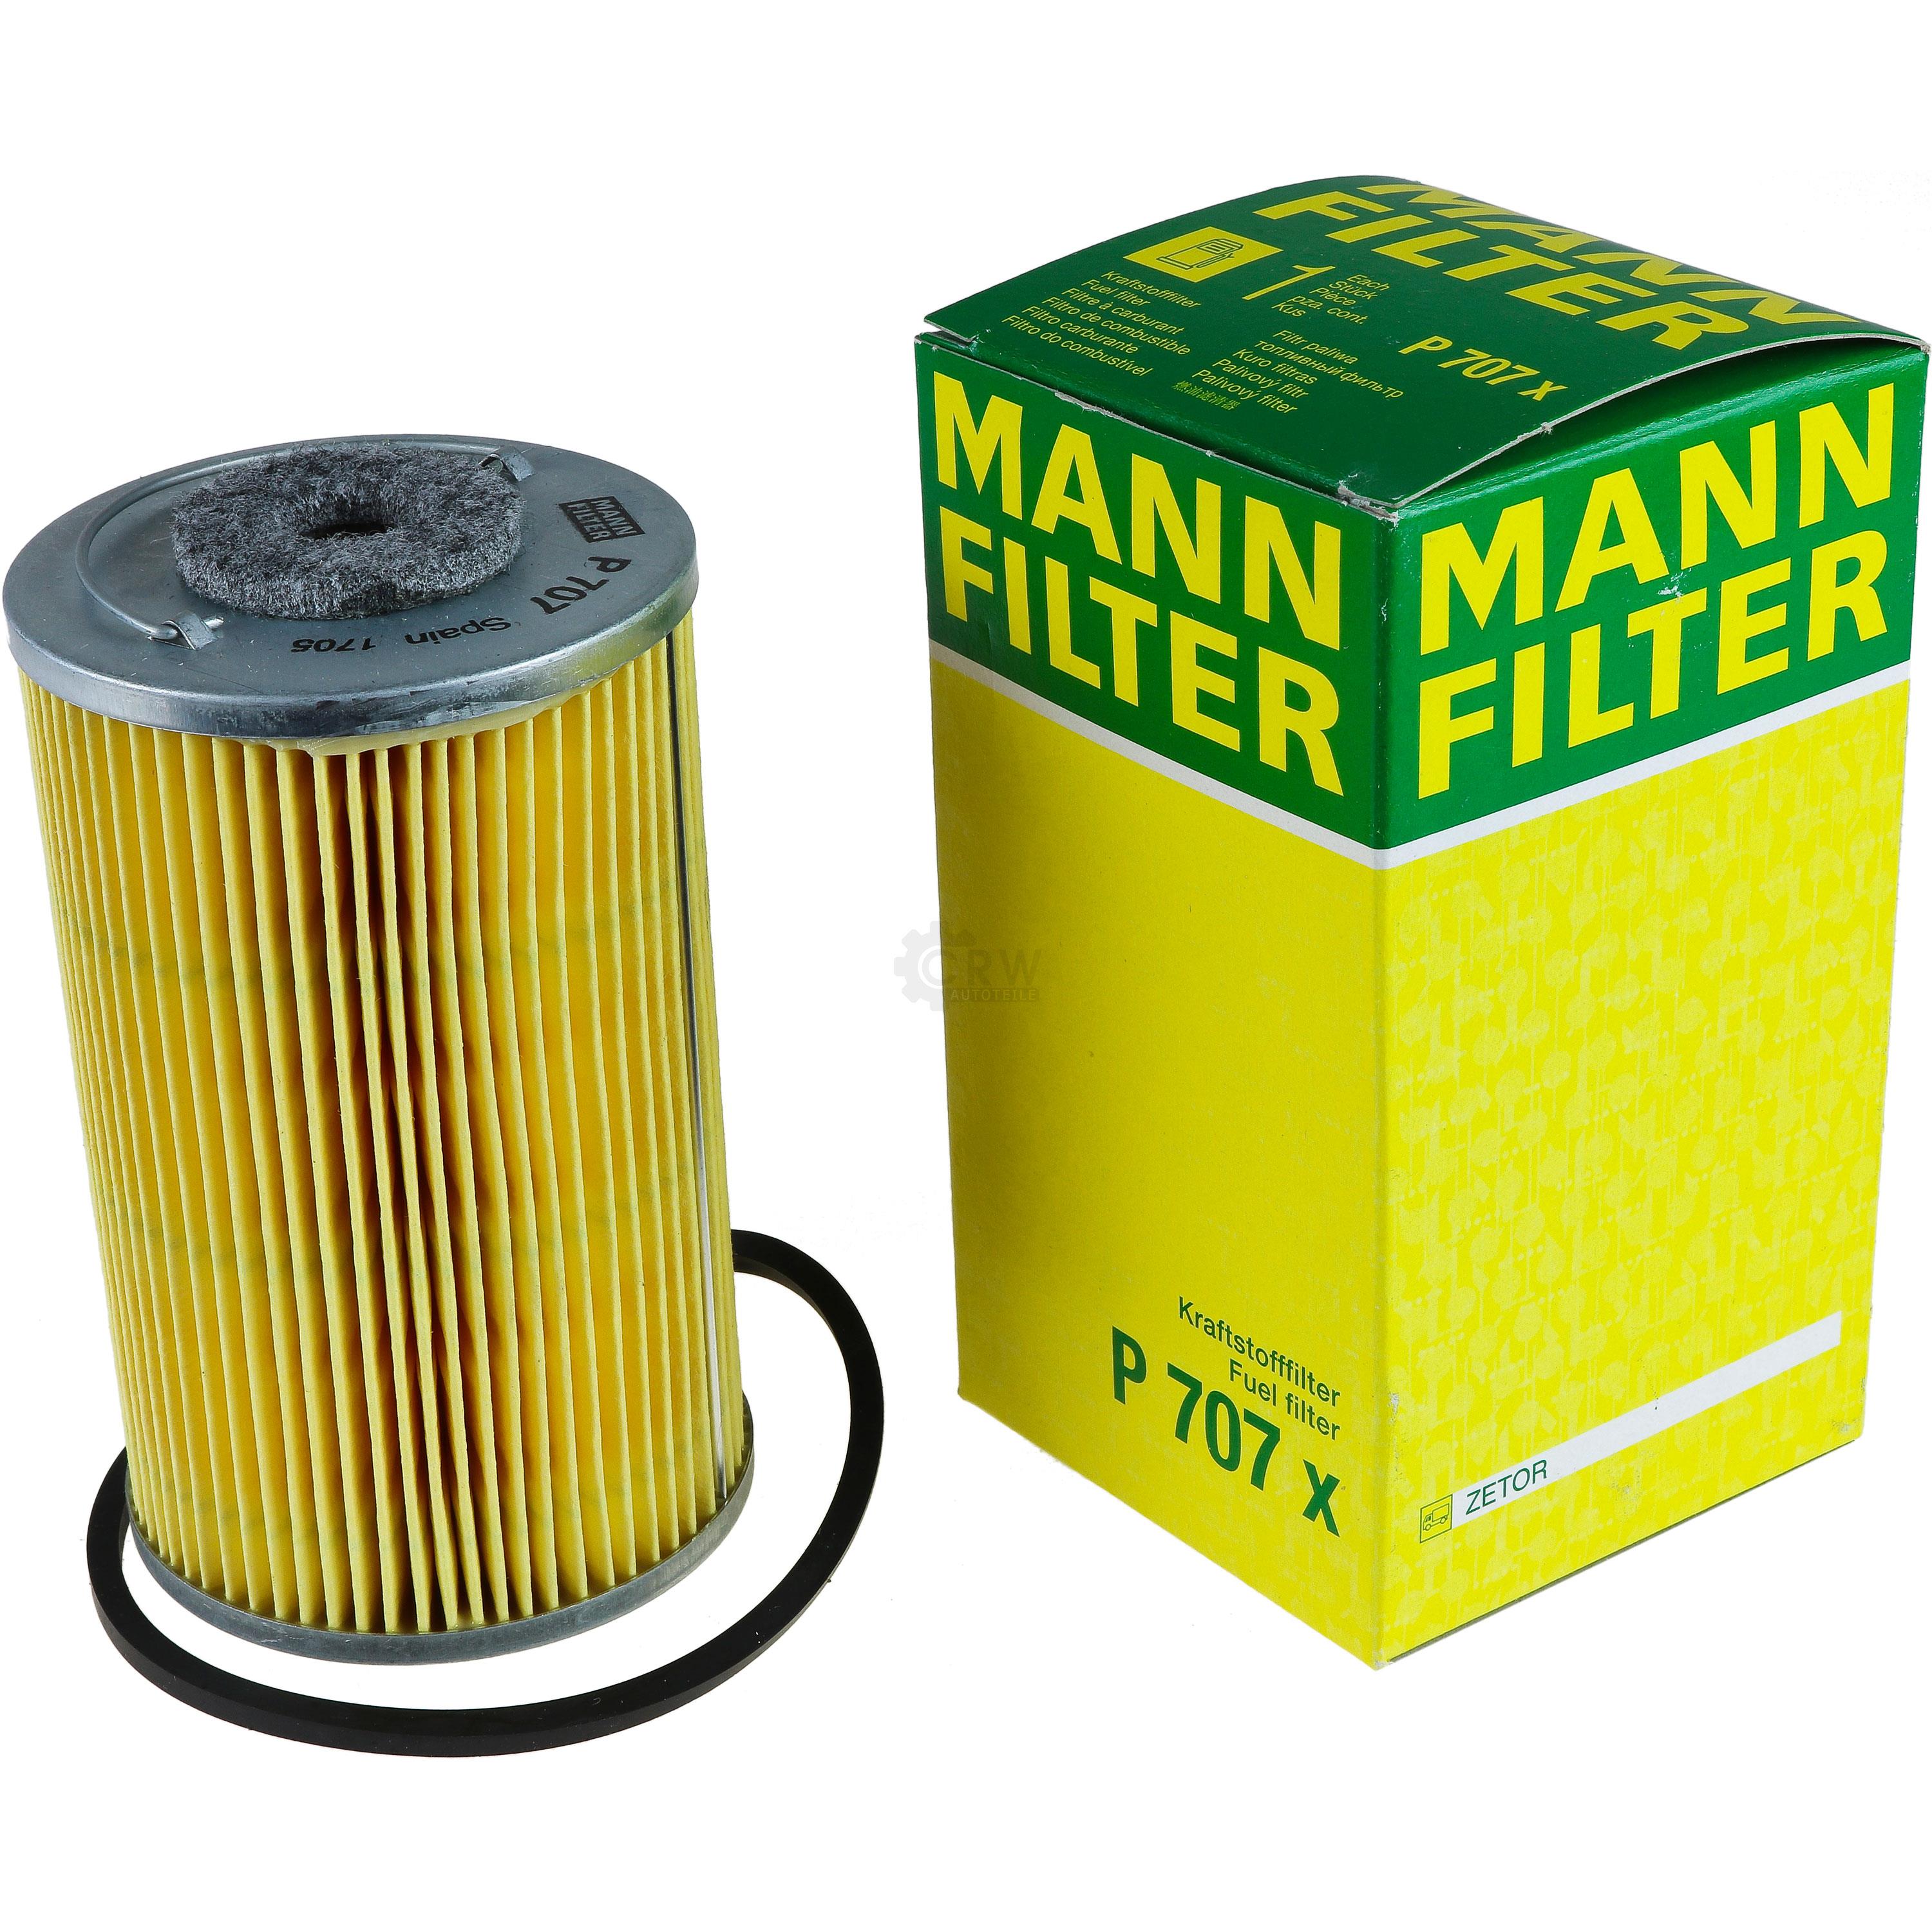 MANN-FILTER Kraftstofffilter P 707 x Fuel Filter